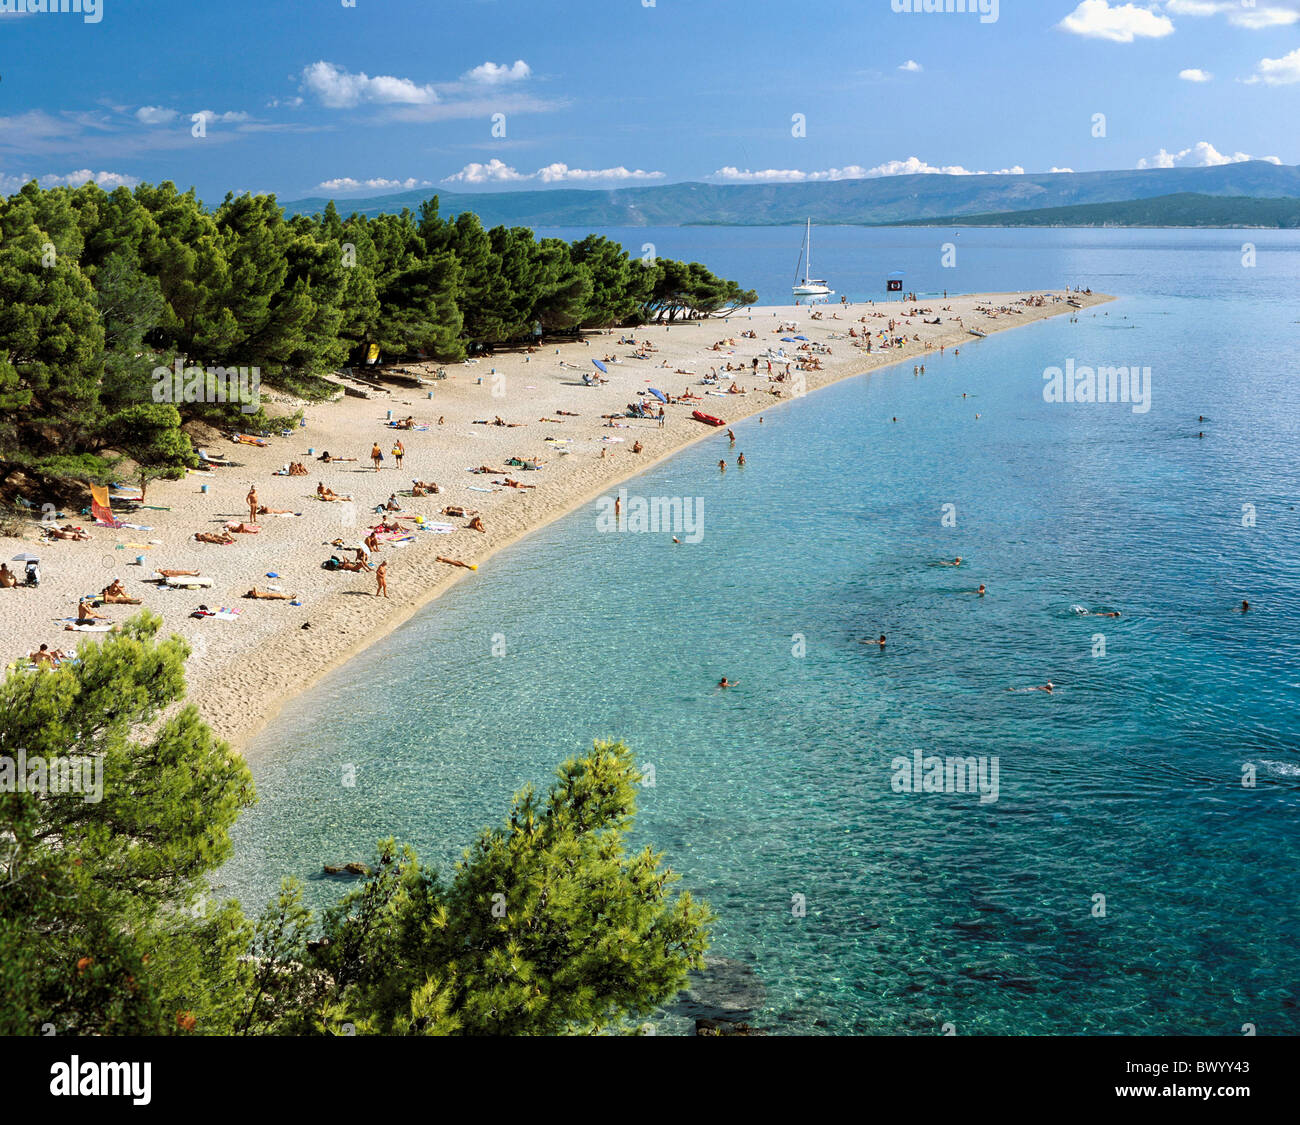 Bagnanti spiaggia balneare vicino a Bol Dalmazia isola Vacanze isola di Brac Croazia mare persone spiaggia seash Foto Stock